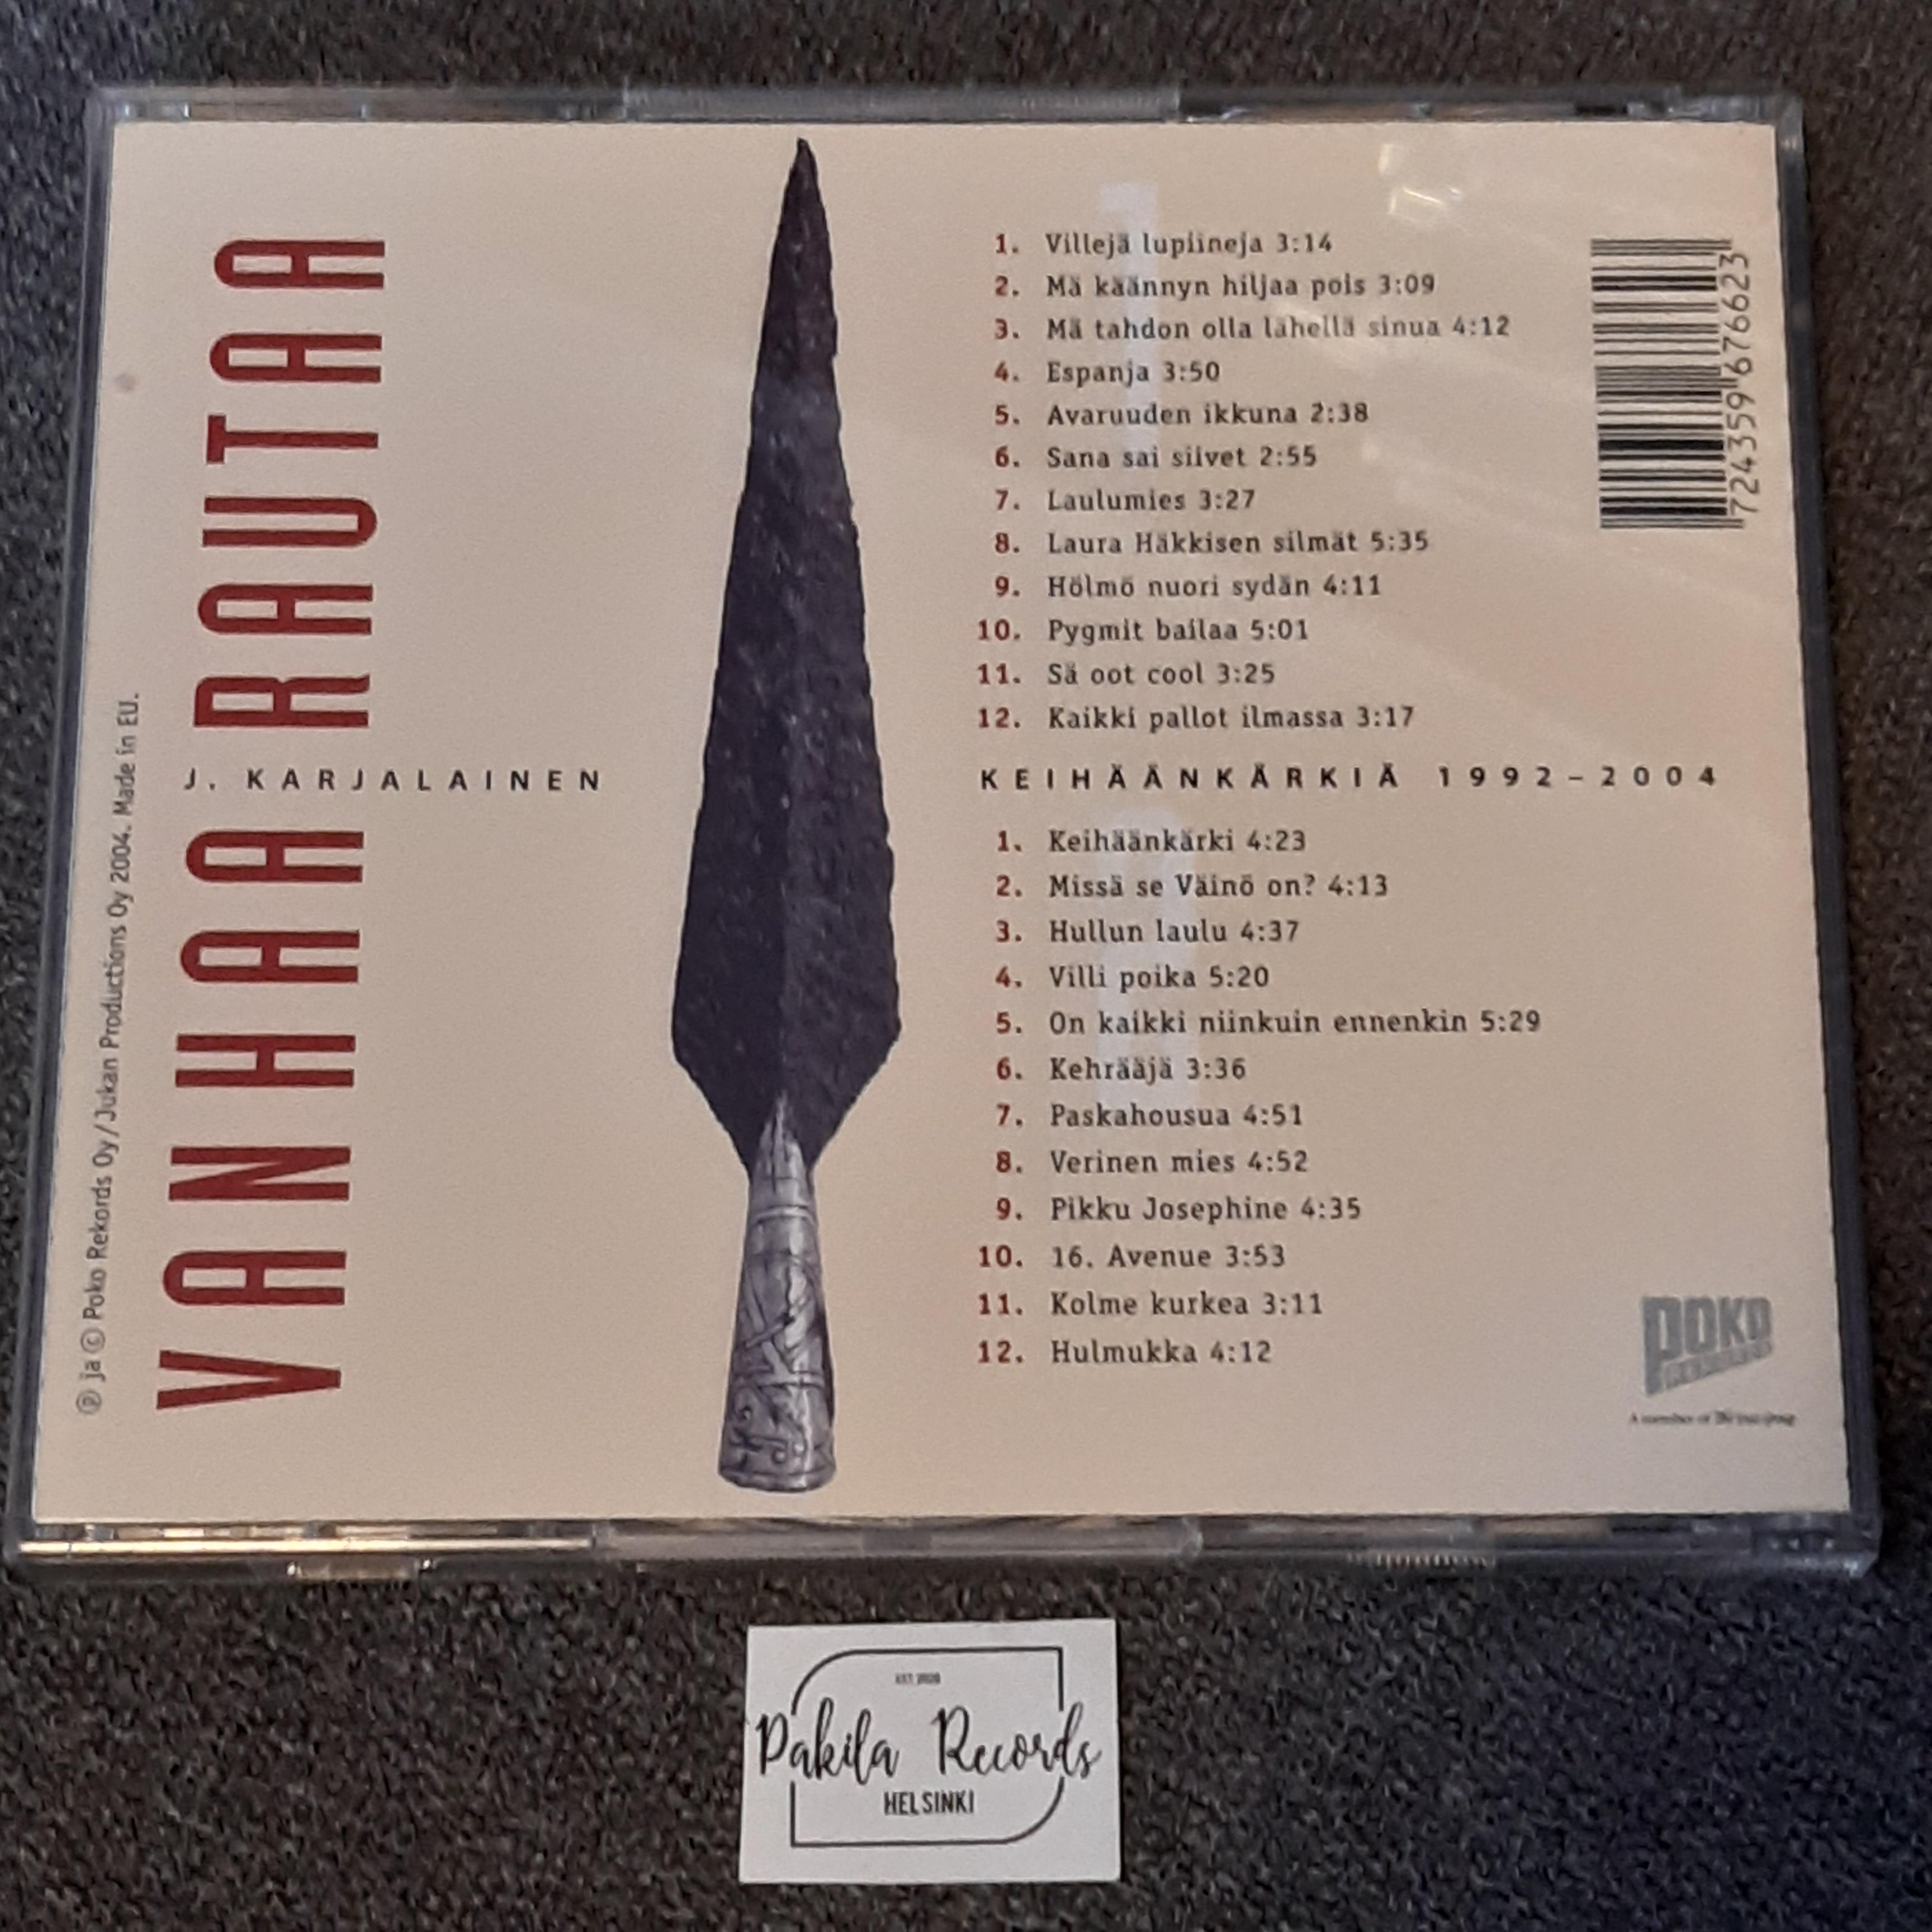 J. Karjalainen - Vanhaa rautaa - 2 CD (käytetty)